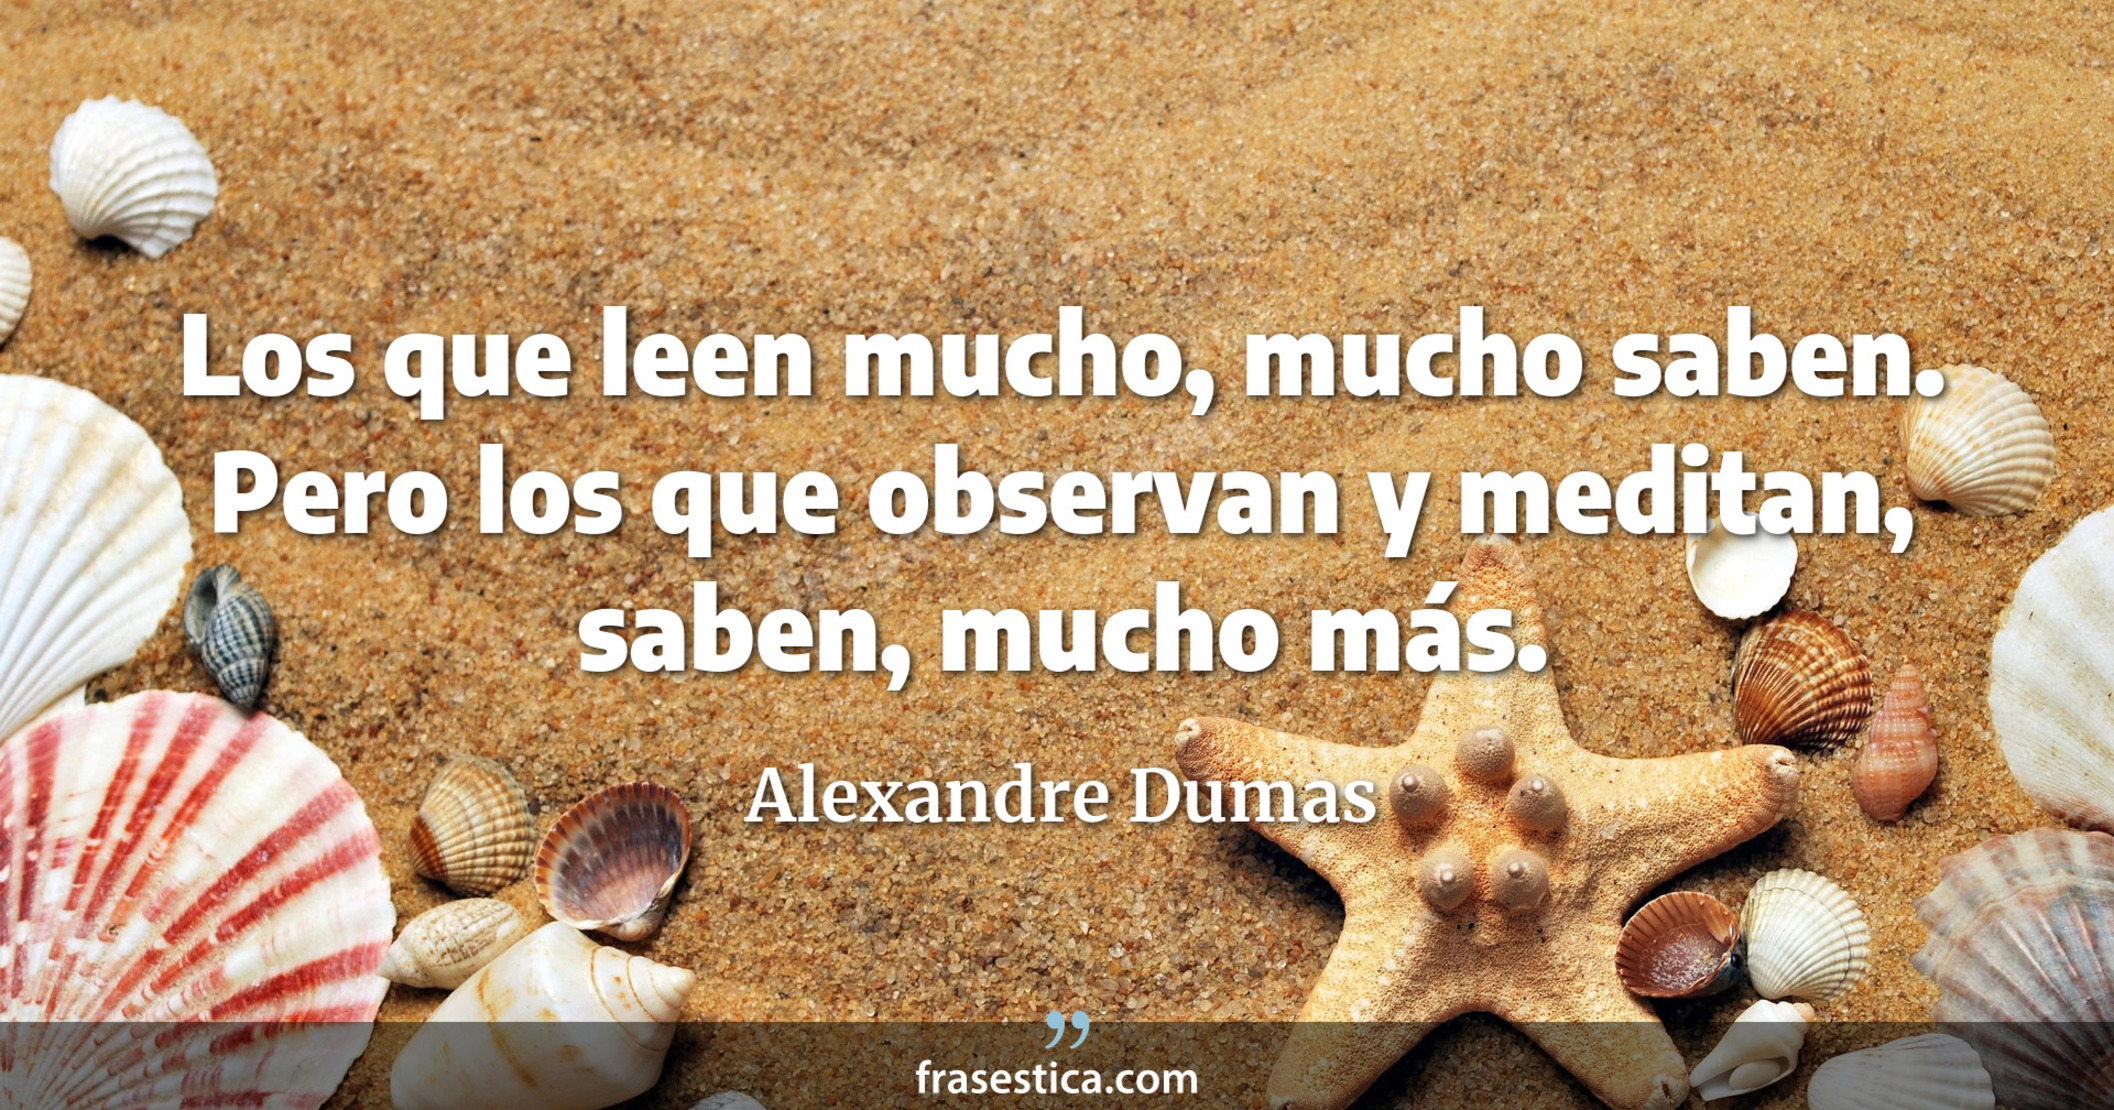 Los que leen mucho, mucho saben. Pero los que observan y meditan, saben, mucho más. - Alexandre Dumas